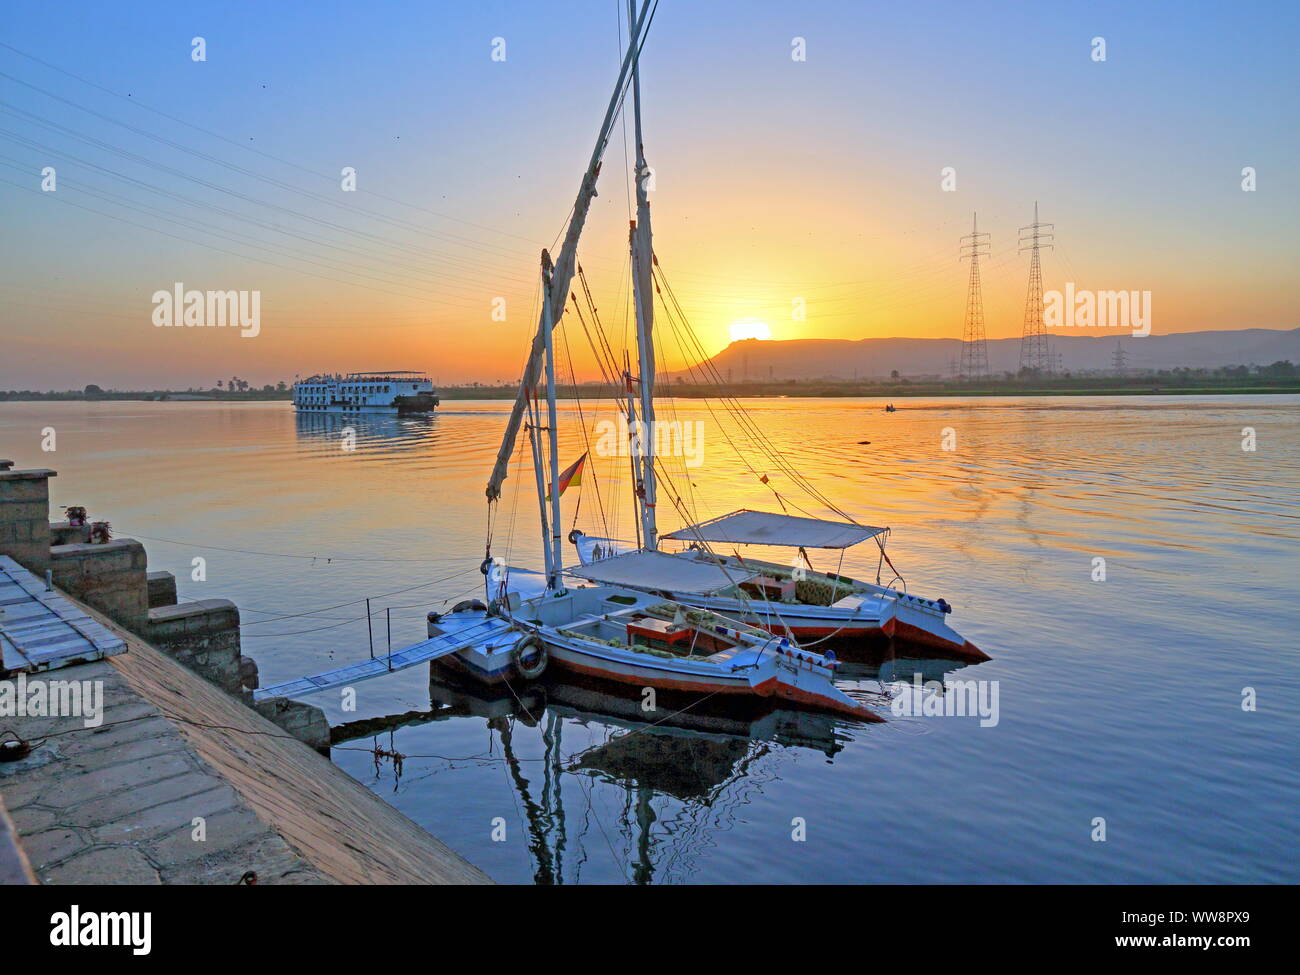 Barche a vela, feluche sulle rive del Nilo con il fiume nave da crociera al tramonto, vicino a Karnak Luxor, Alto Egitto Egitto Foto Stock